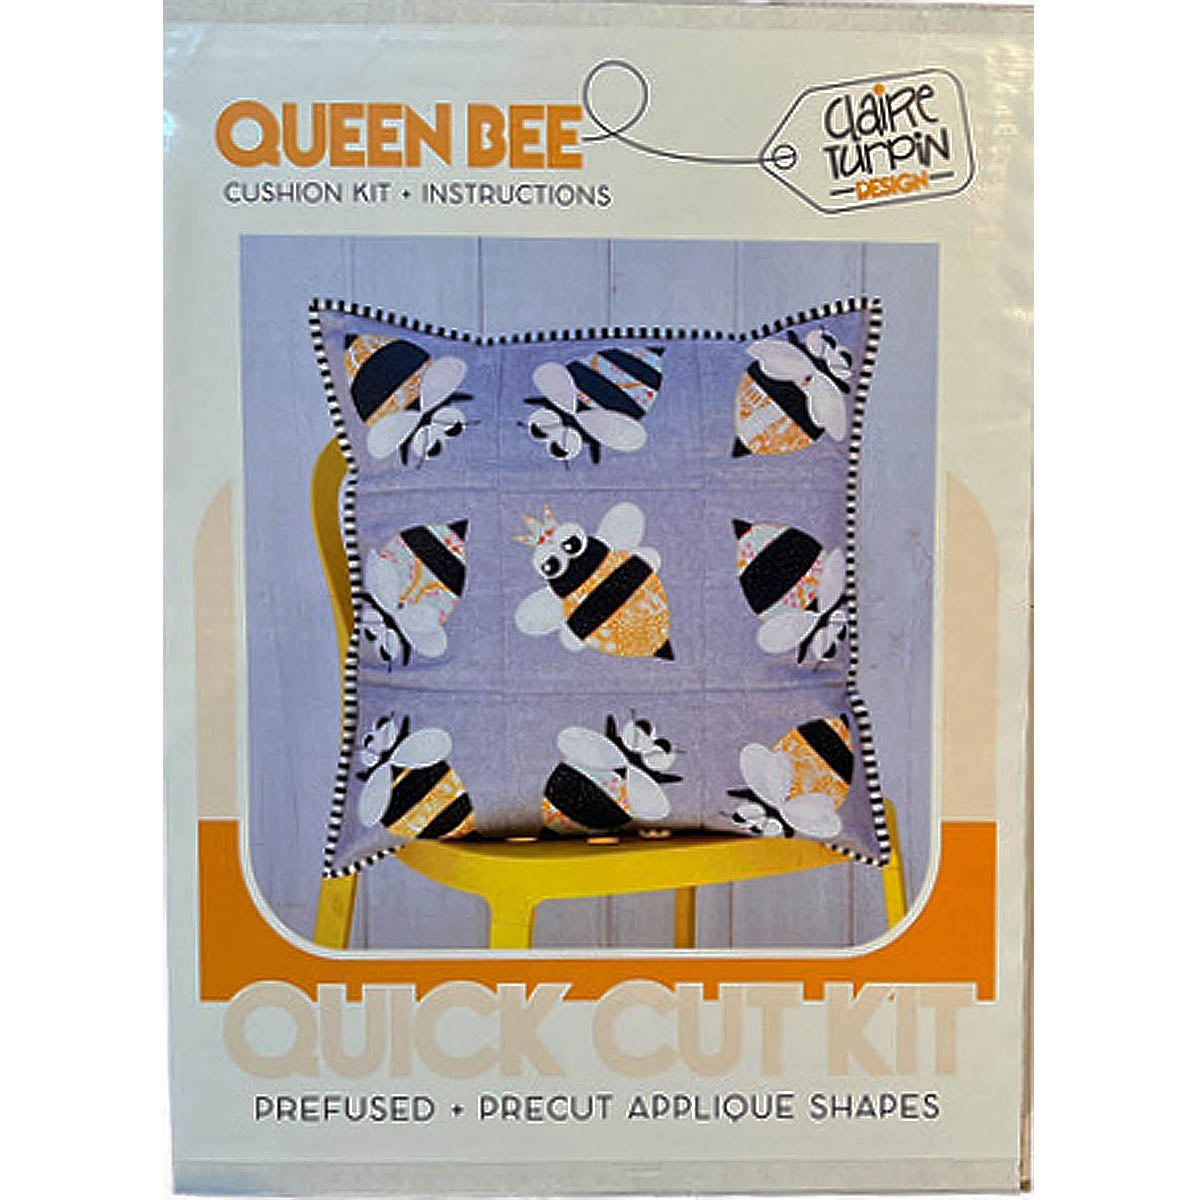 QUEEN BEE CUSHION - Quick Cut Applique Cushion Kit - Tilda Fabric